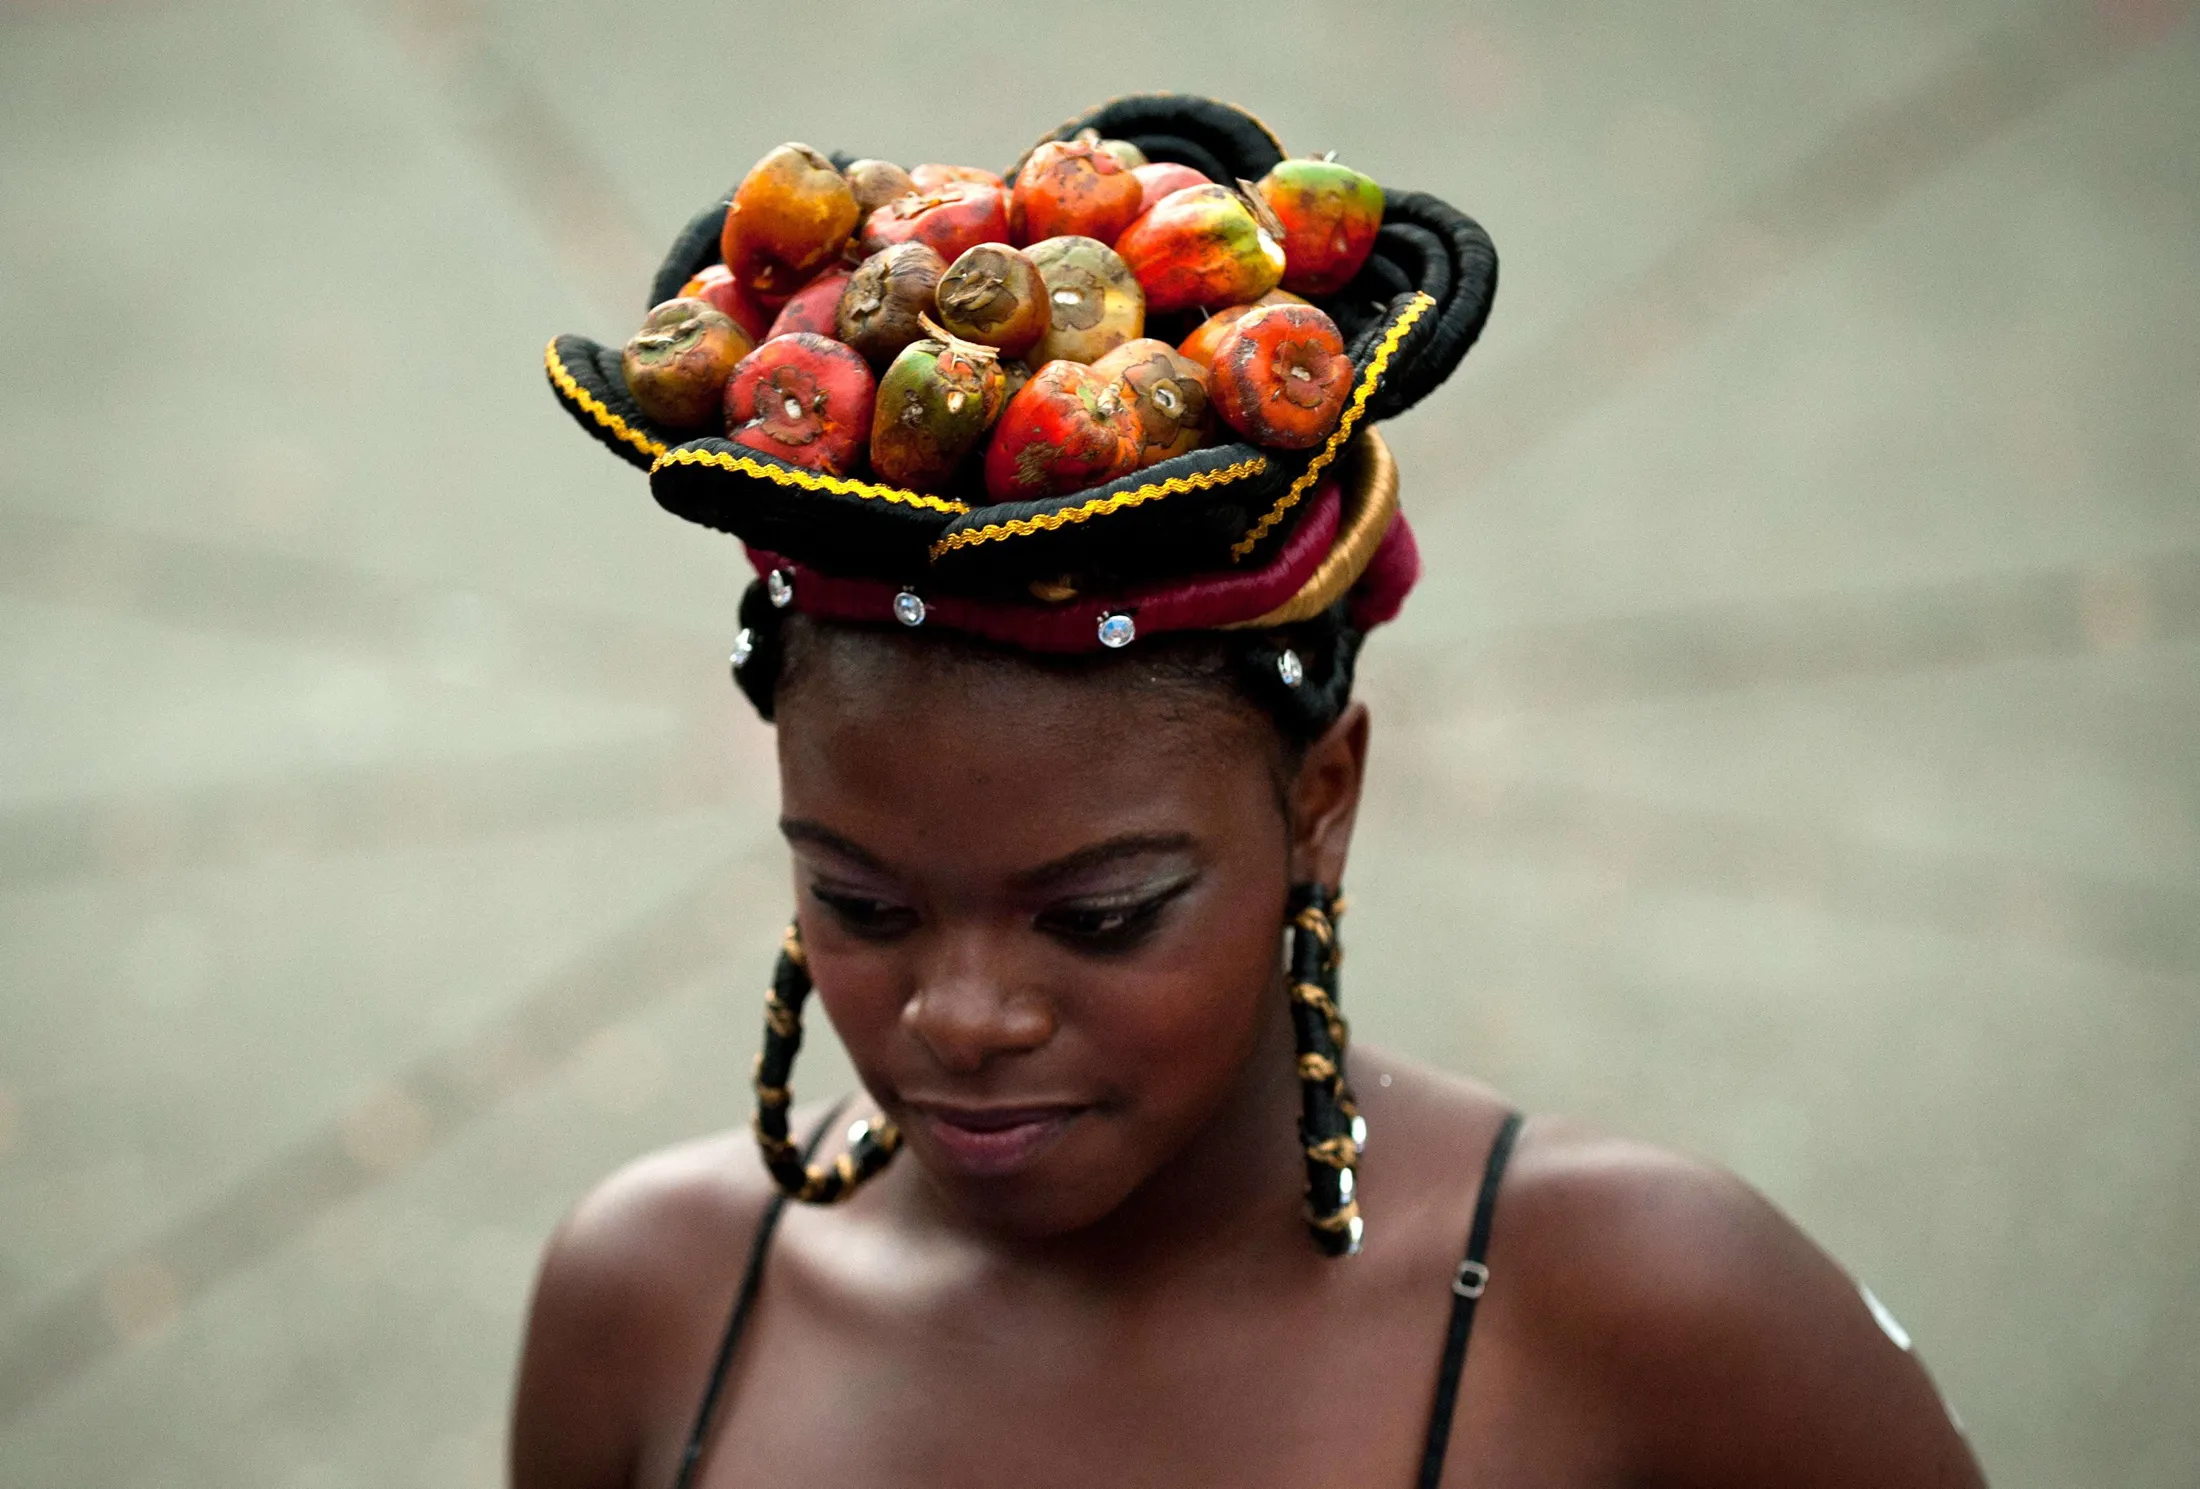 Негритянки нижний новгород. Красивые африканки. Африканские женщины. Африканские красотки. Фрукты на голове.